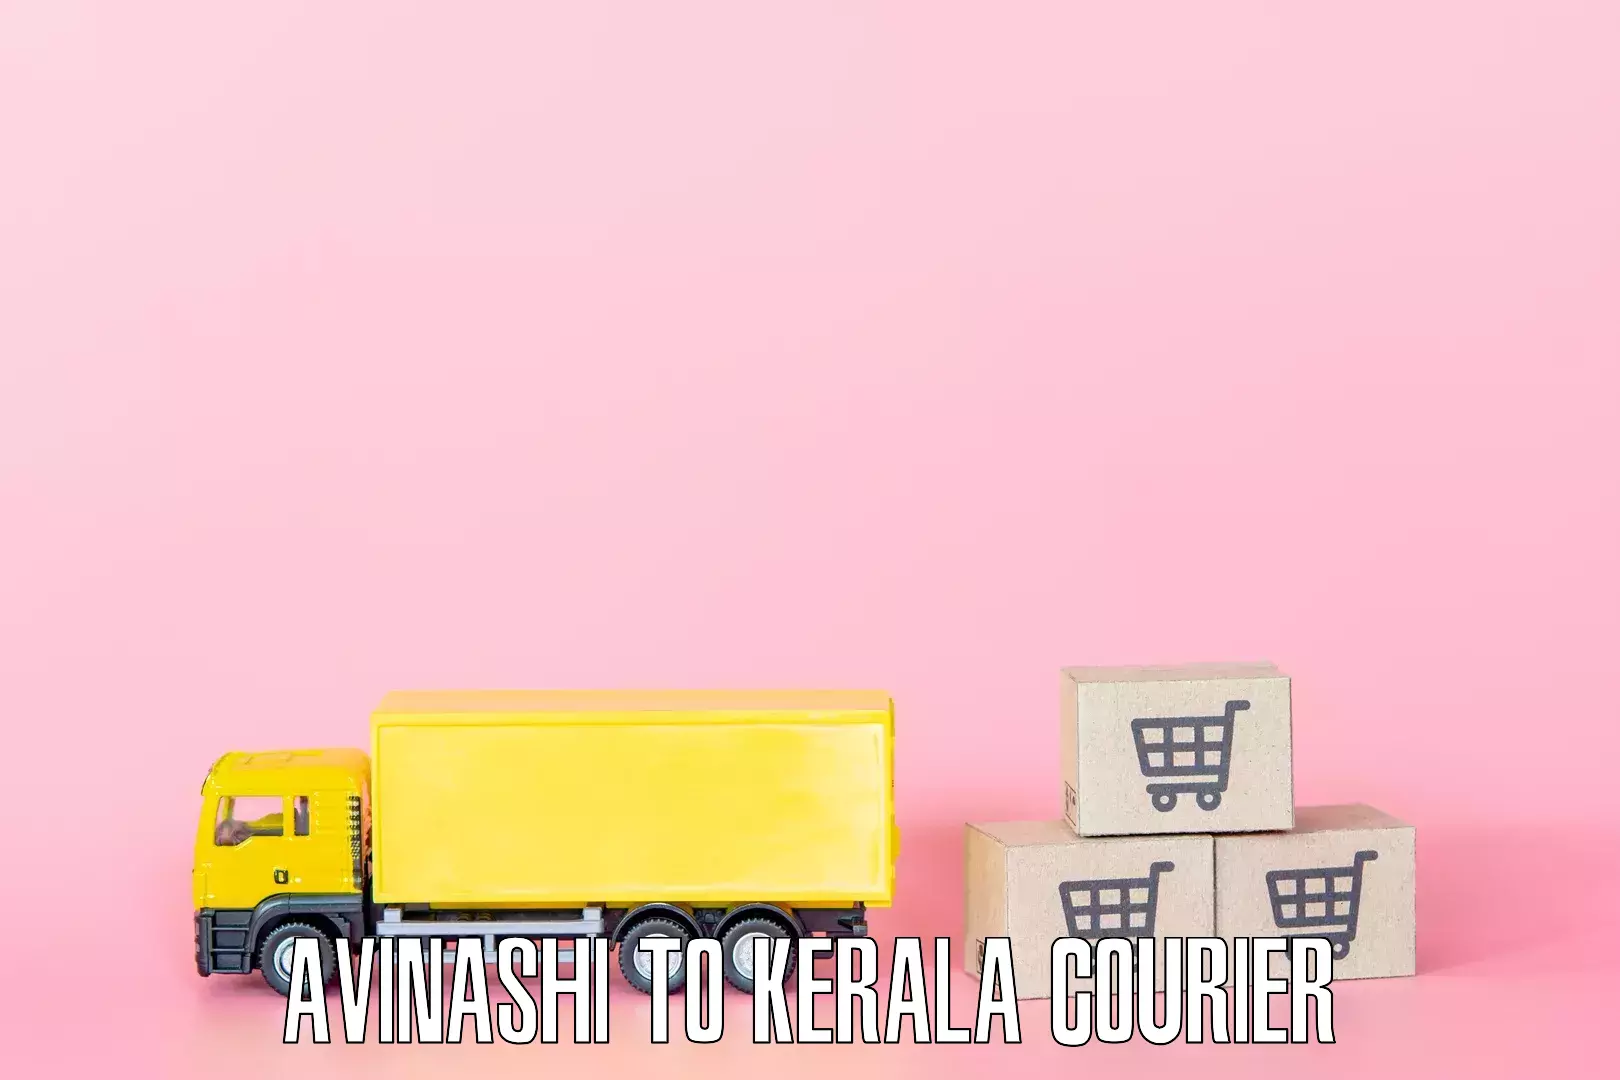 Specialized home movers Avinashi to Kerala